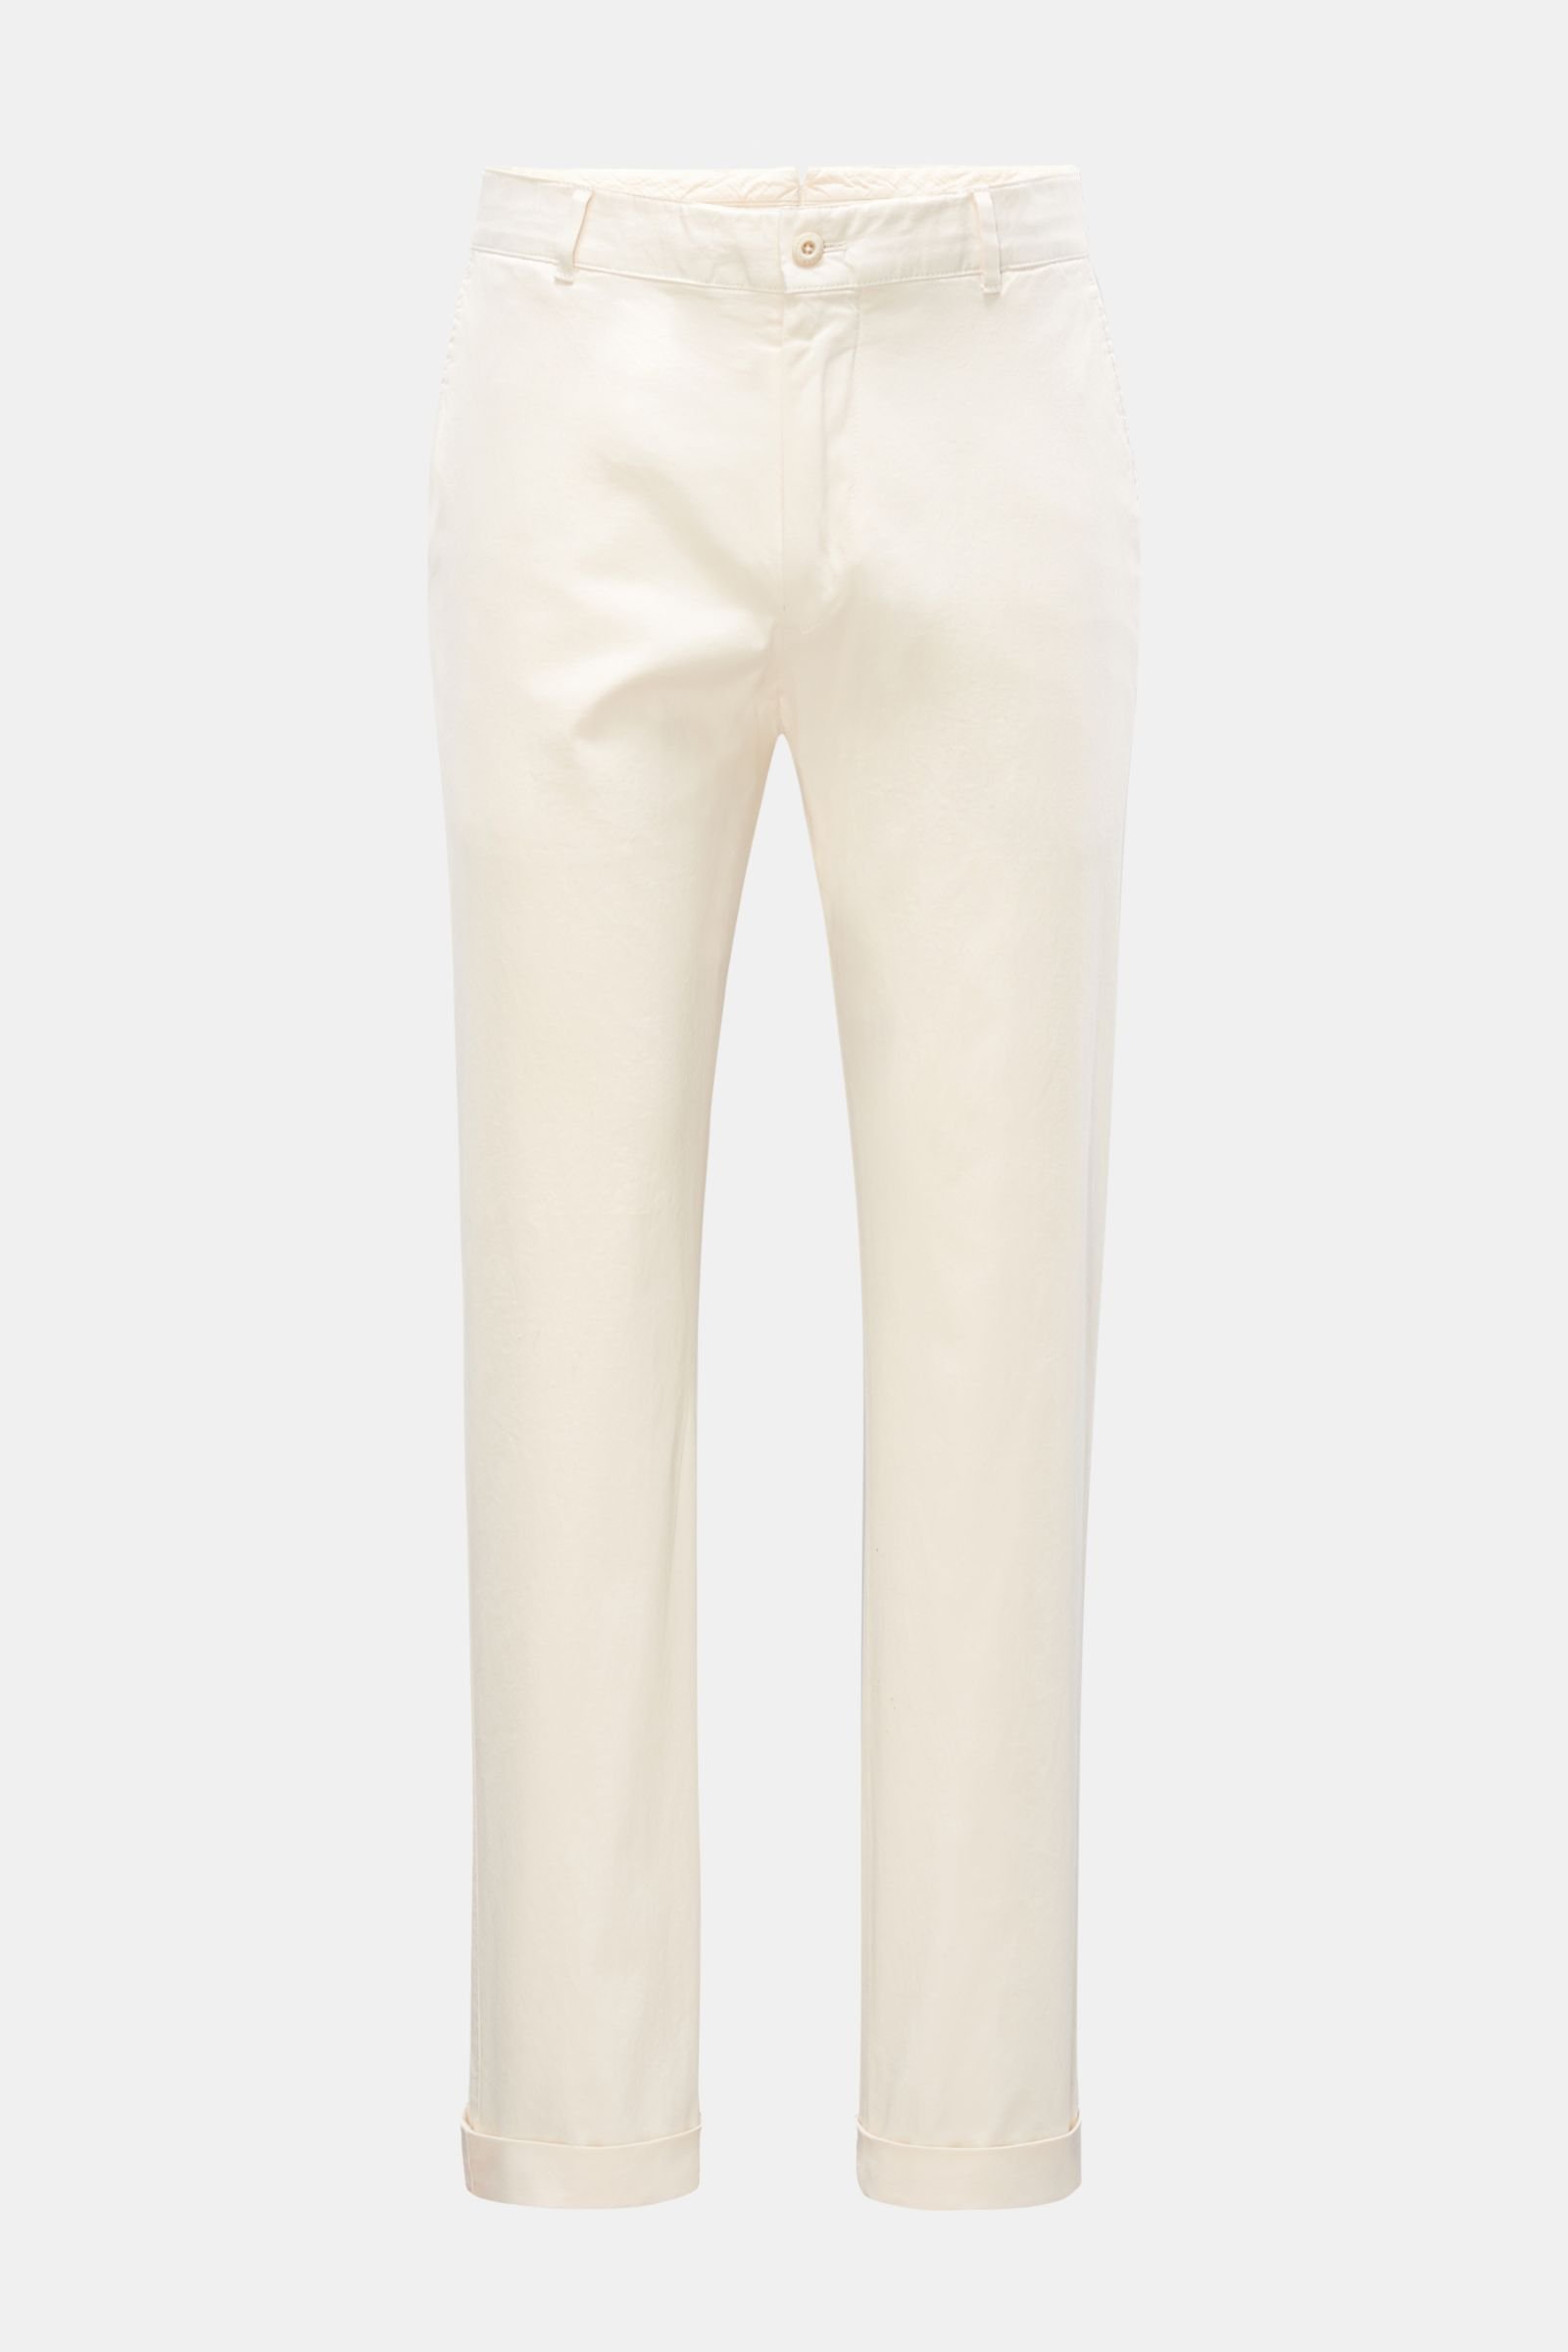 Cotton trousers cream